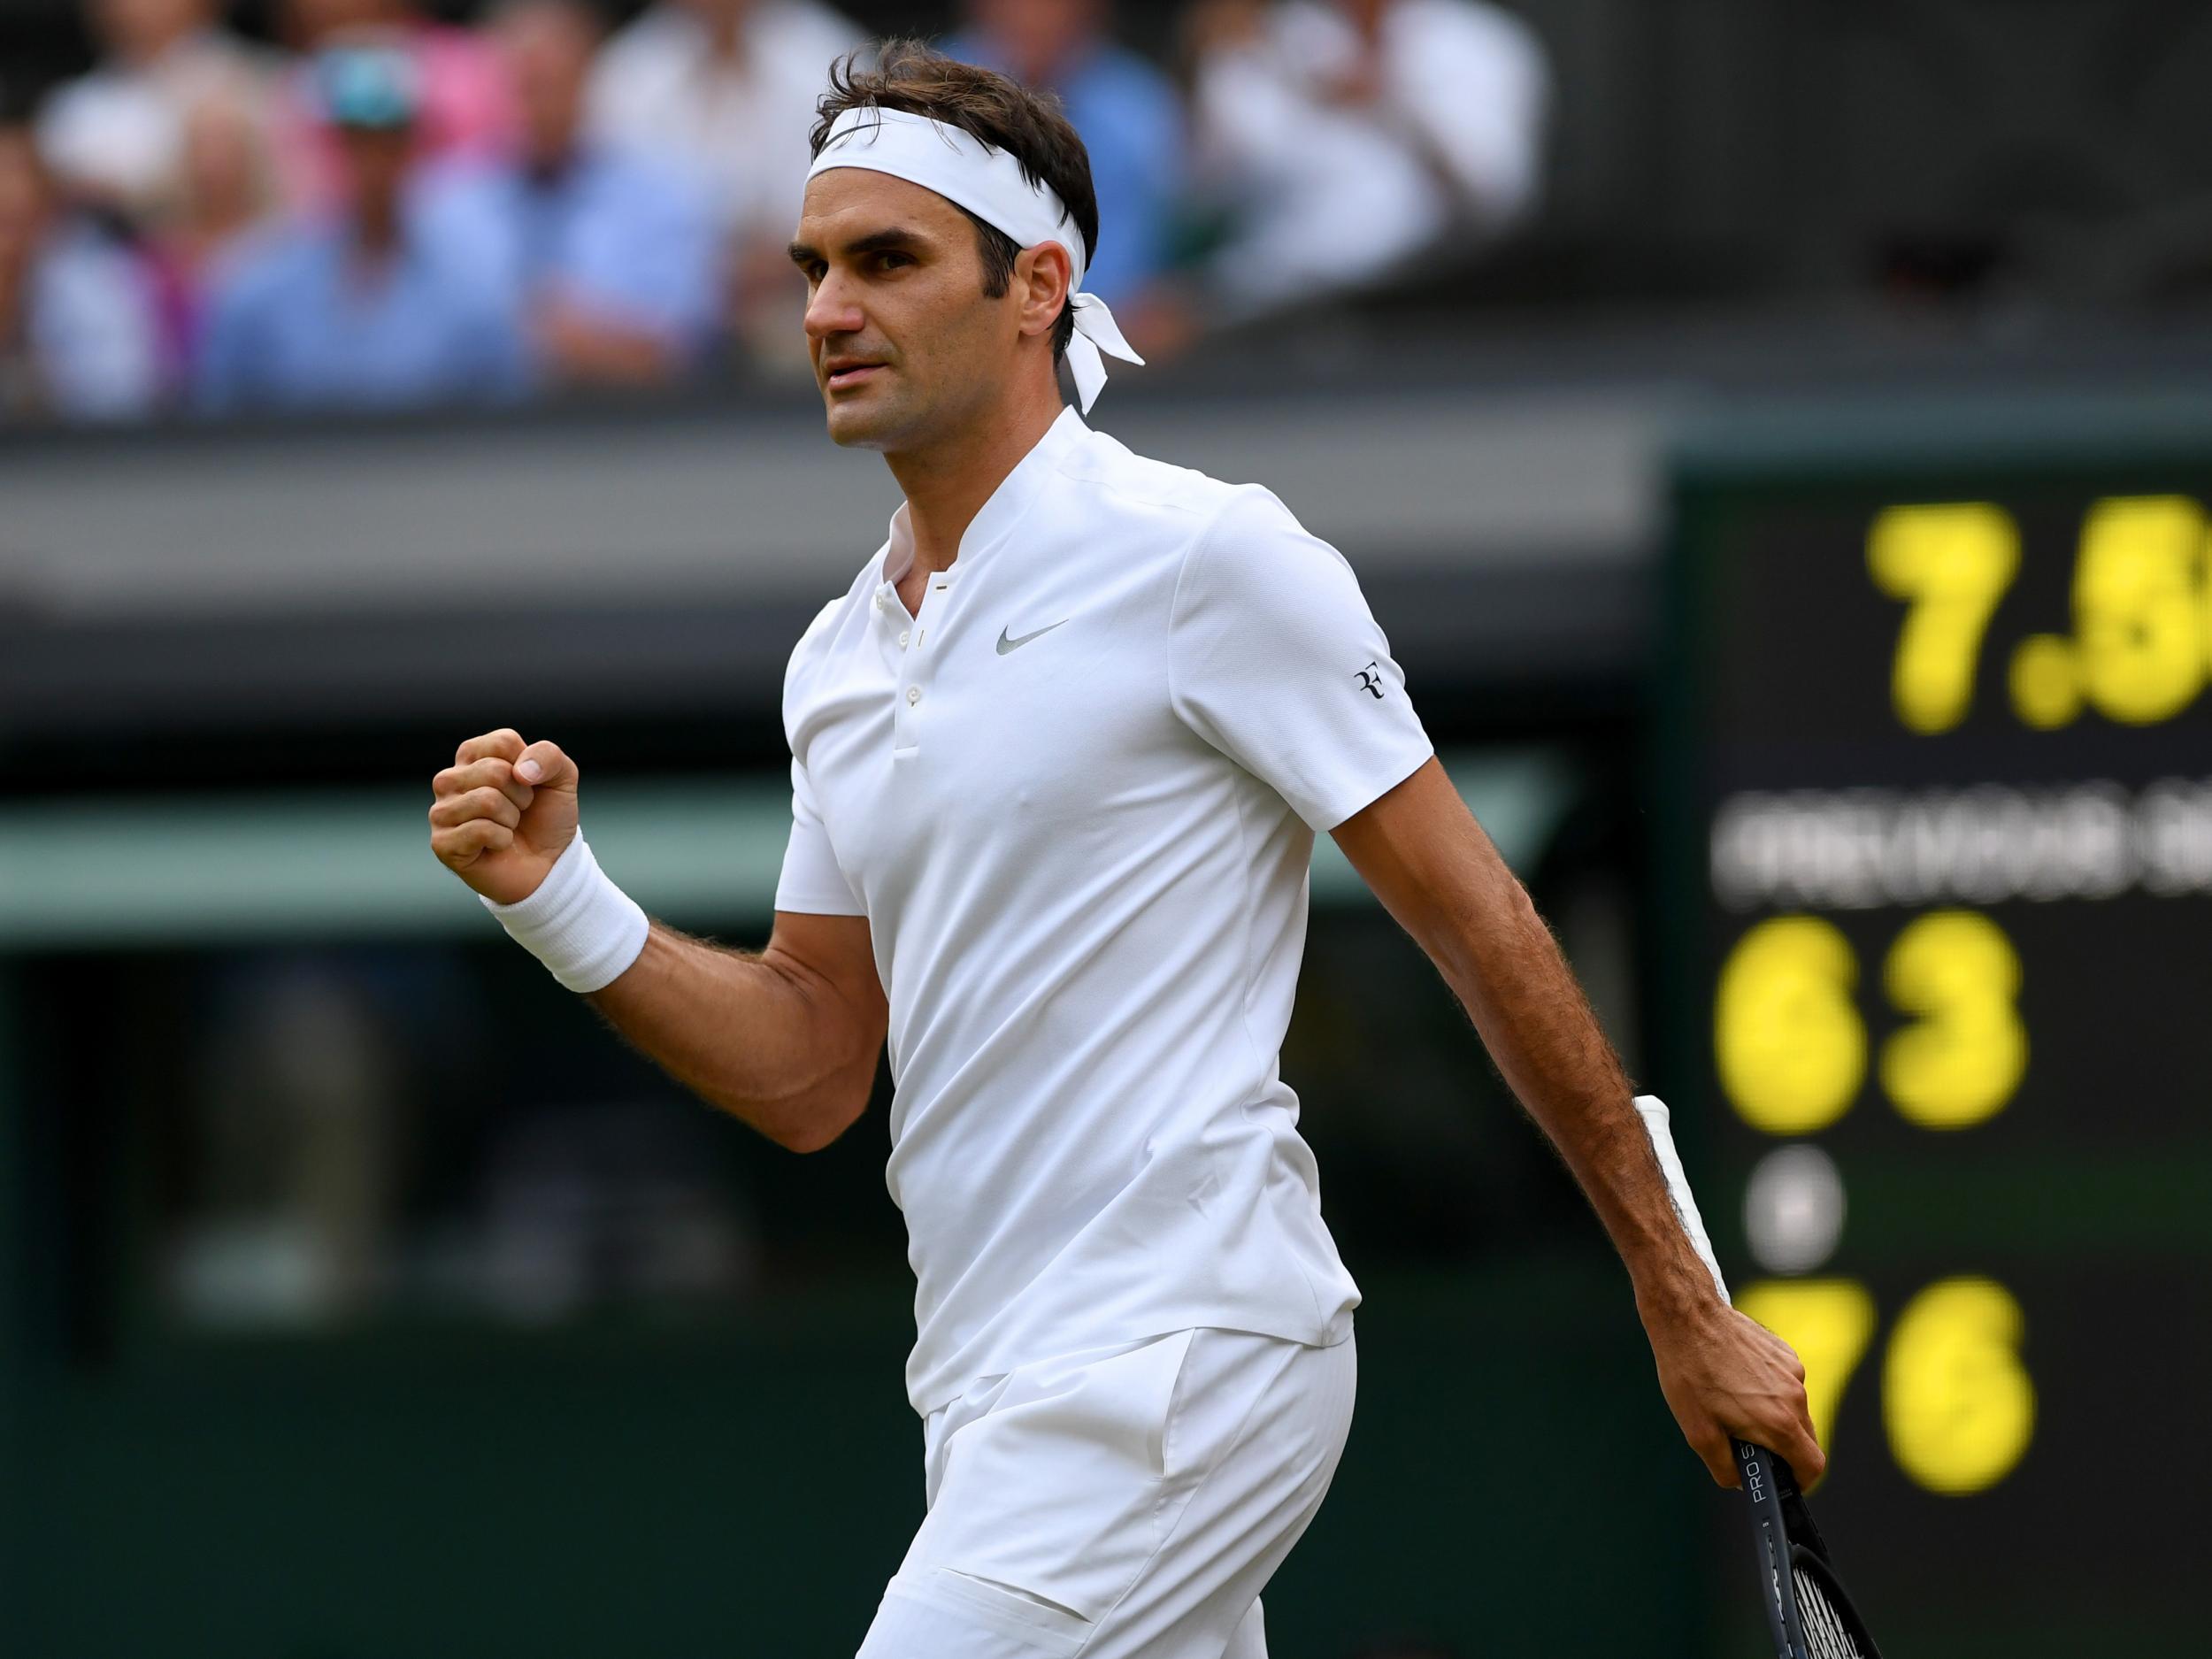 Roger Federer fell behind against his Serbian opponent